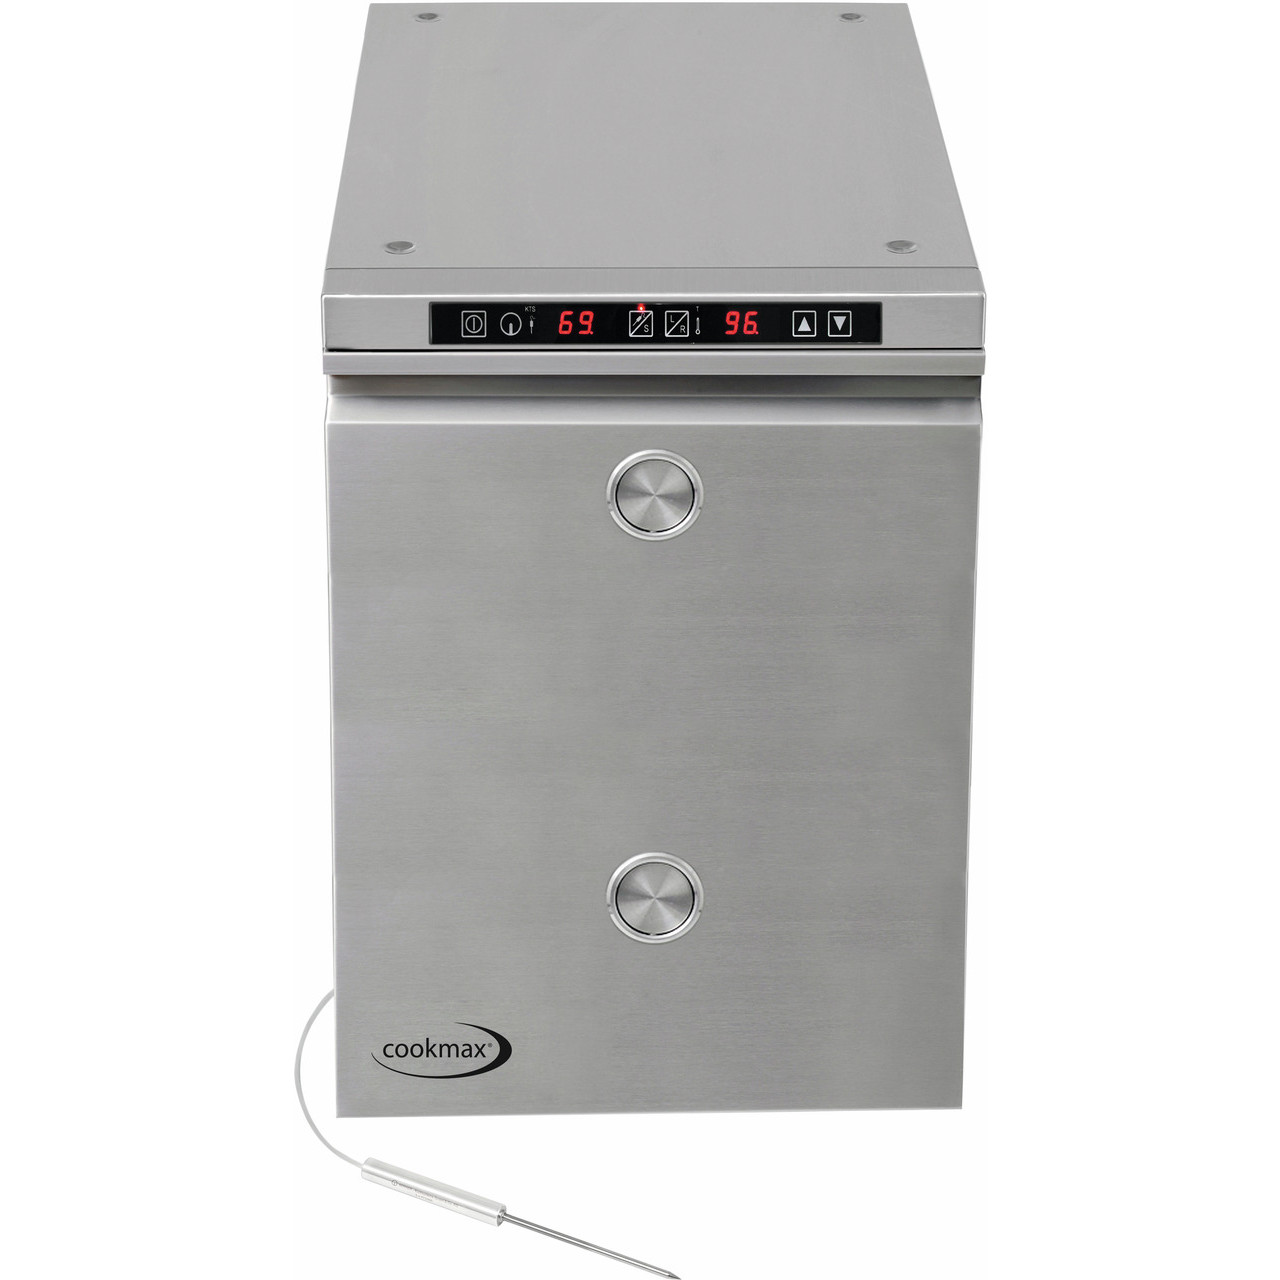 Heißhalte- und Niedrigtemperaturgargerät 6 x GN 1/1 mit Kerntemperatursteuerung